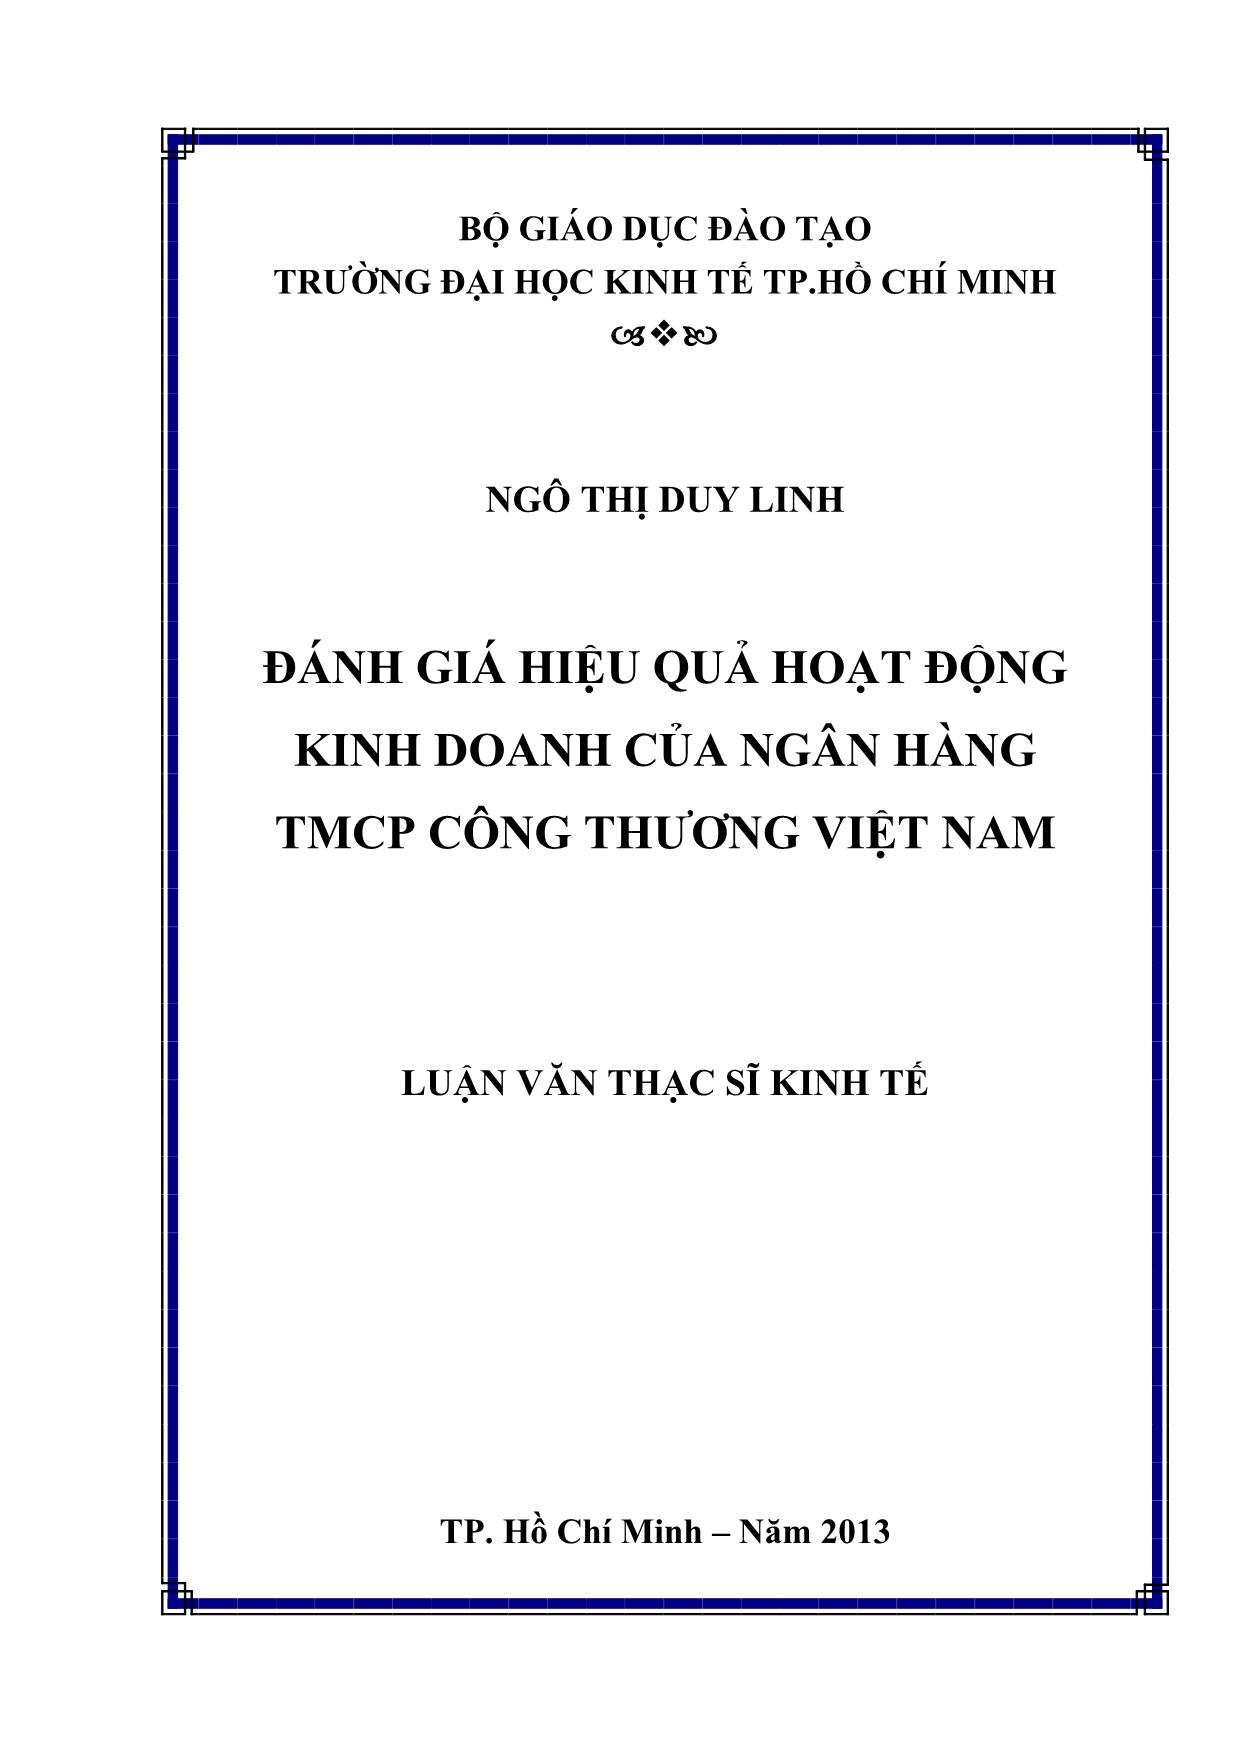 Đánh giá hiệu quả hoạt động kinh doanh của ngân hàng TMCP công thương Việt Nam trang 1